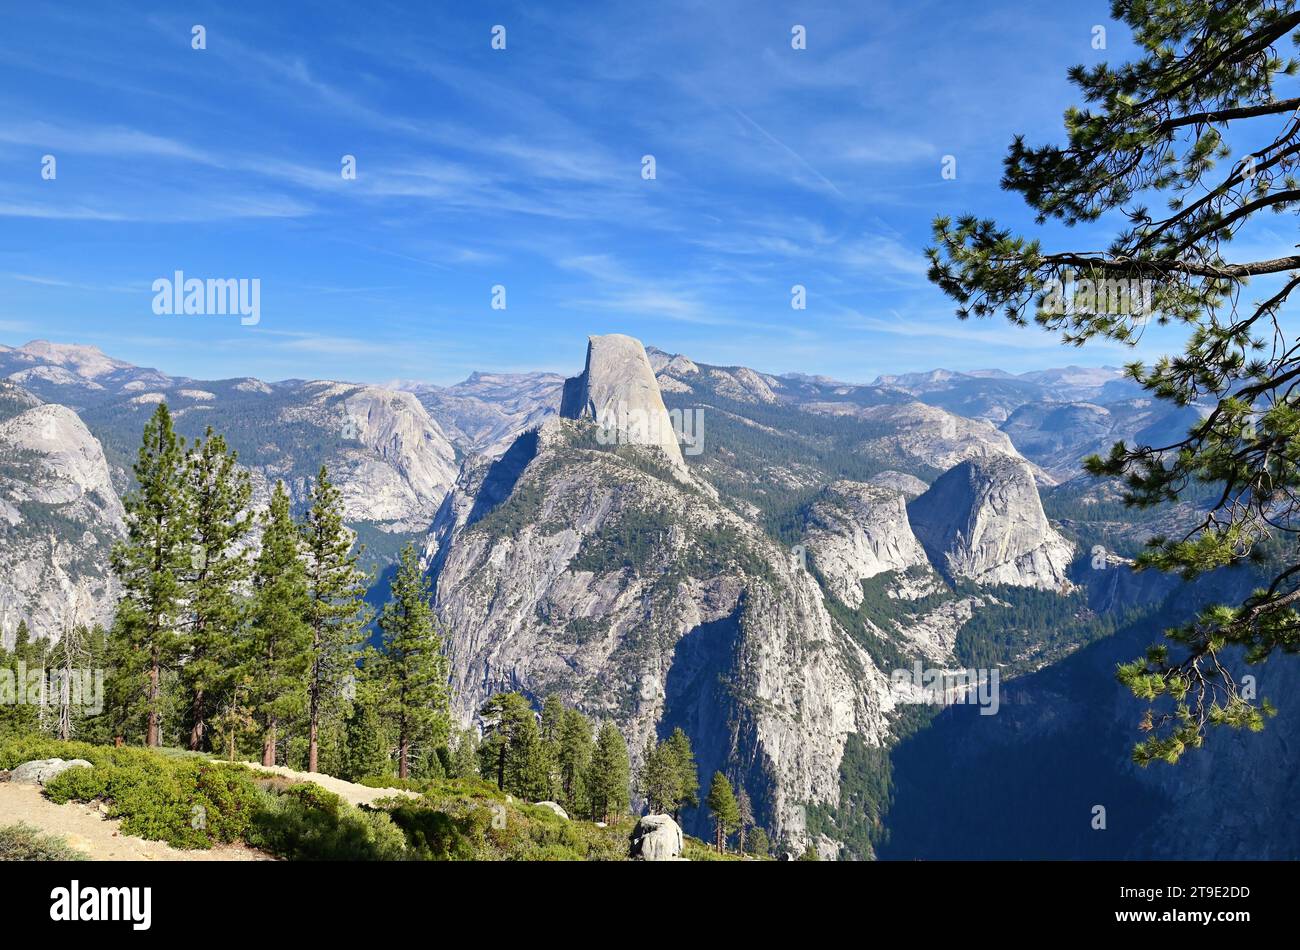 Yosemite National Park, Kalifornien, USA. Ein spektakulärer Blick auf den Half Dome, umgeben von Bergen jenseits des Yosemite Valley. Stockfoto